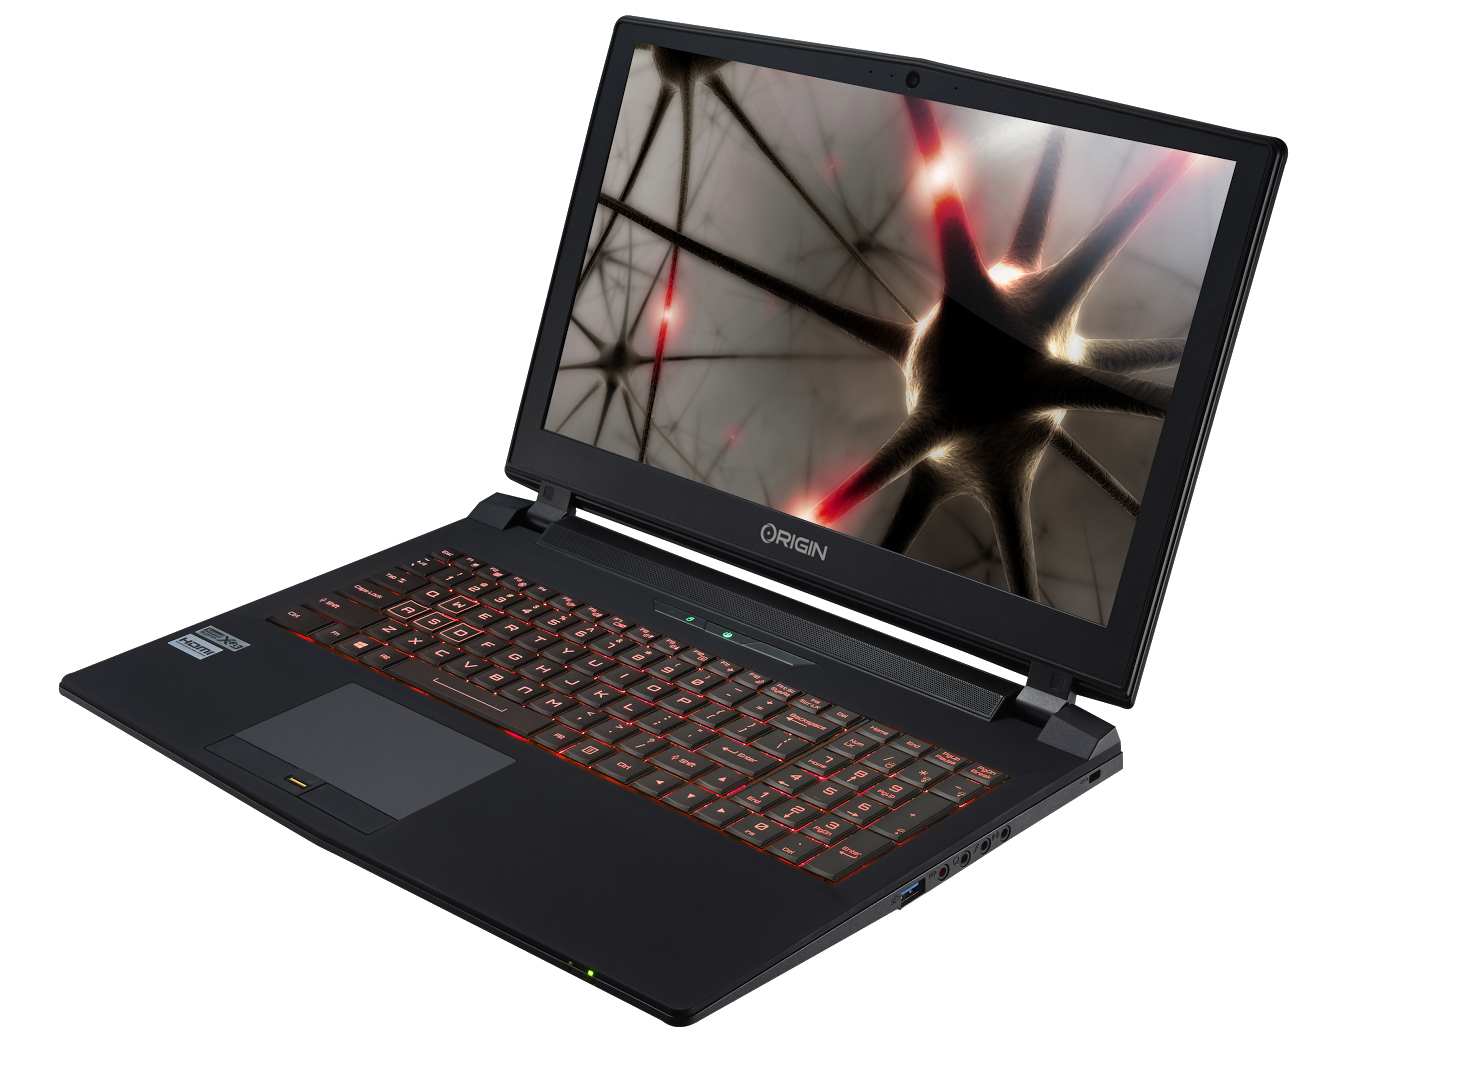 Với đánh giá tích cực từ các chuyên gia, Origin PC EON15-X gaming notebook là một chiếc laptop gaming đáng chú ý trong năm. Thiết kế gọn nhẹ và hấp dẫn, phần cứng mạnh mẽ và màn hình đẹp, chiếc laptop này sẽ đem lại trải nghiệm tuyệt vời cho các game thủ.